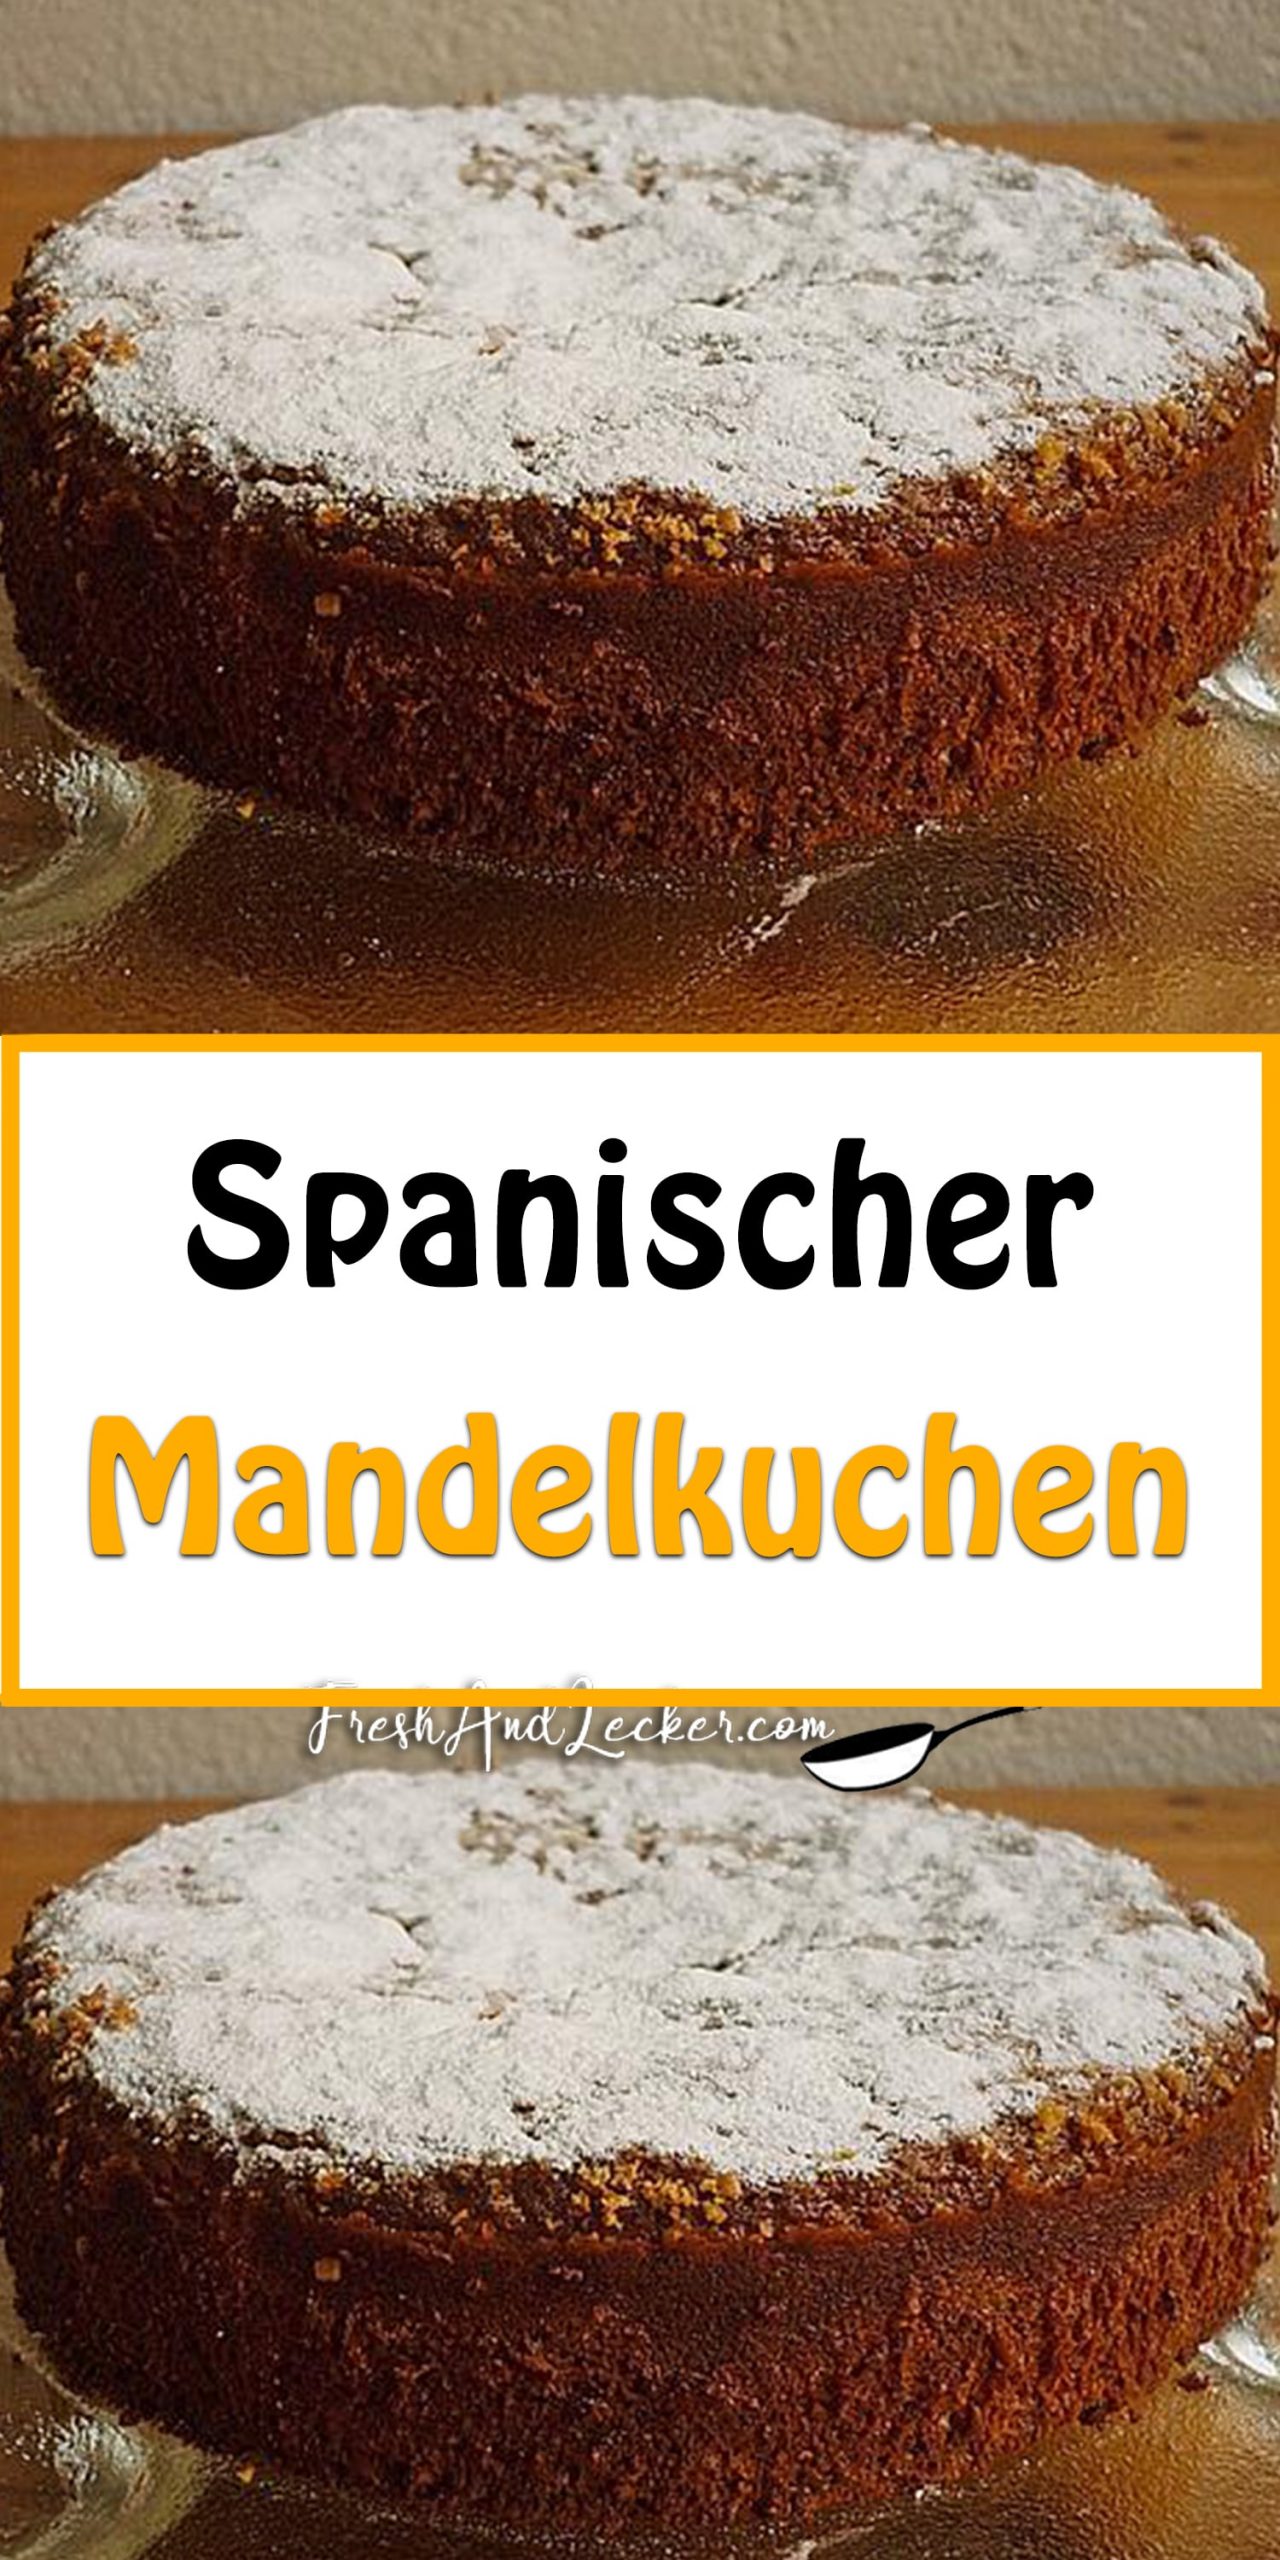 Spanischer Mandelkuchen - Fresh Lecker